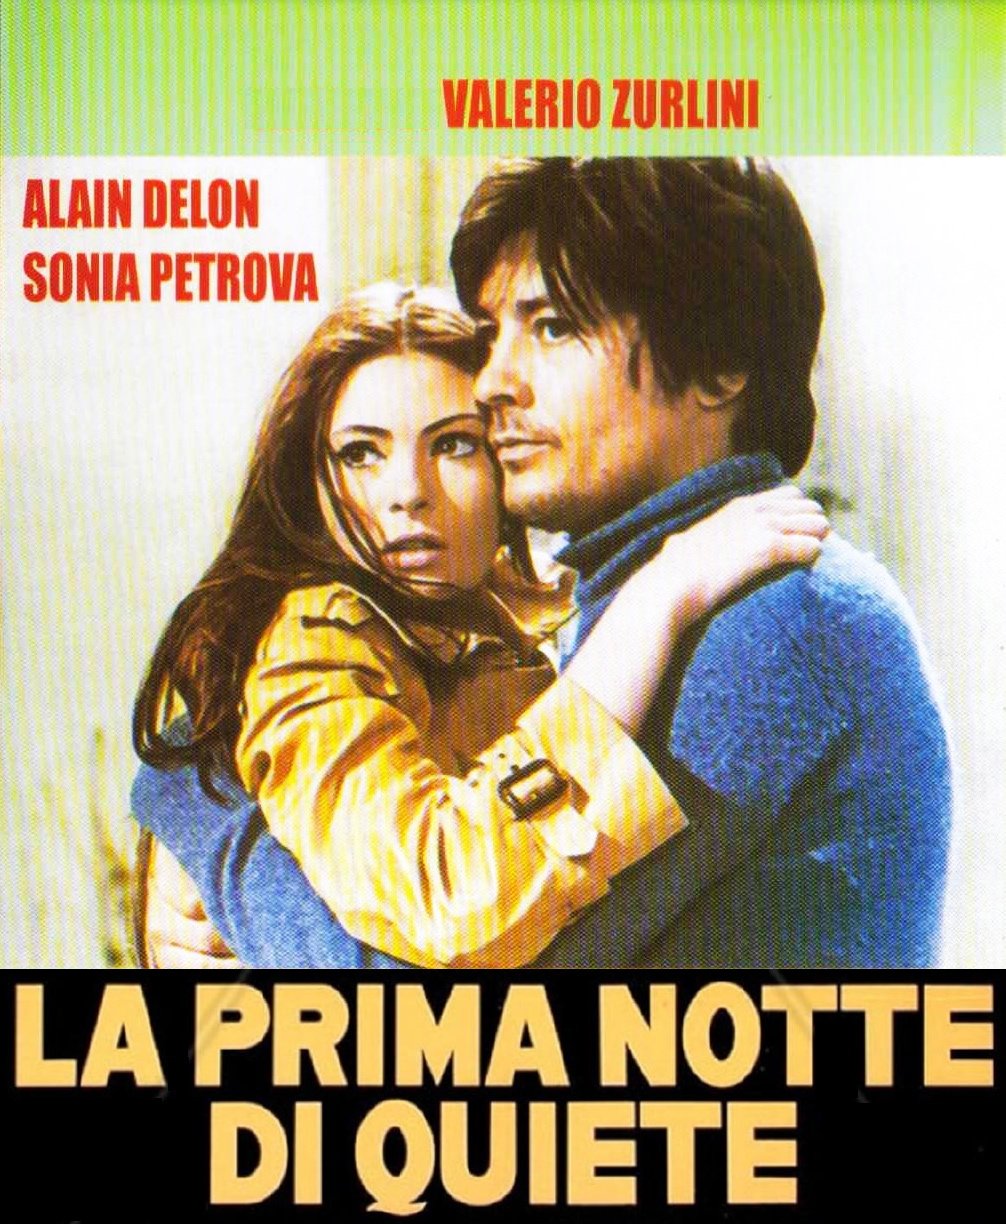 L'affiche originale du film La Prima notte di quiete en italien